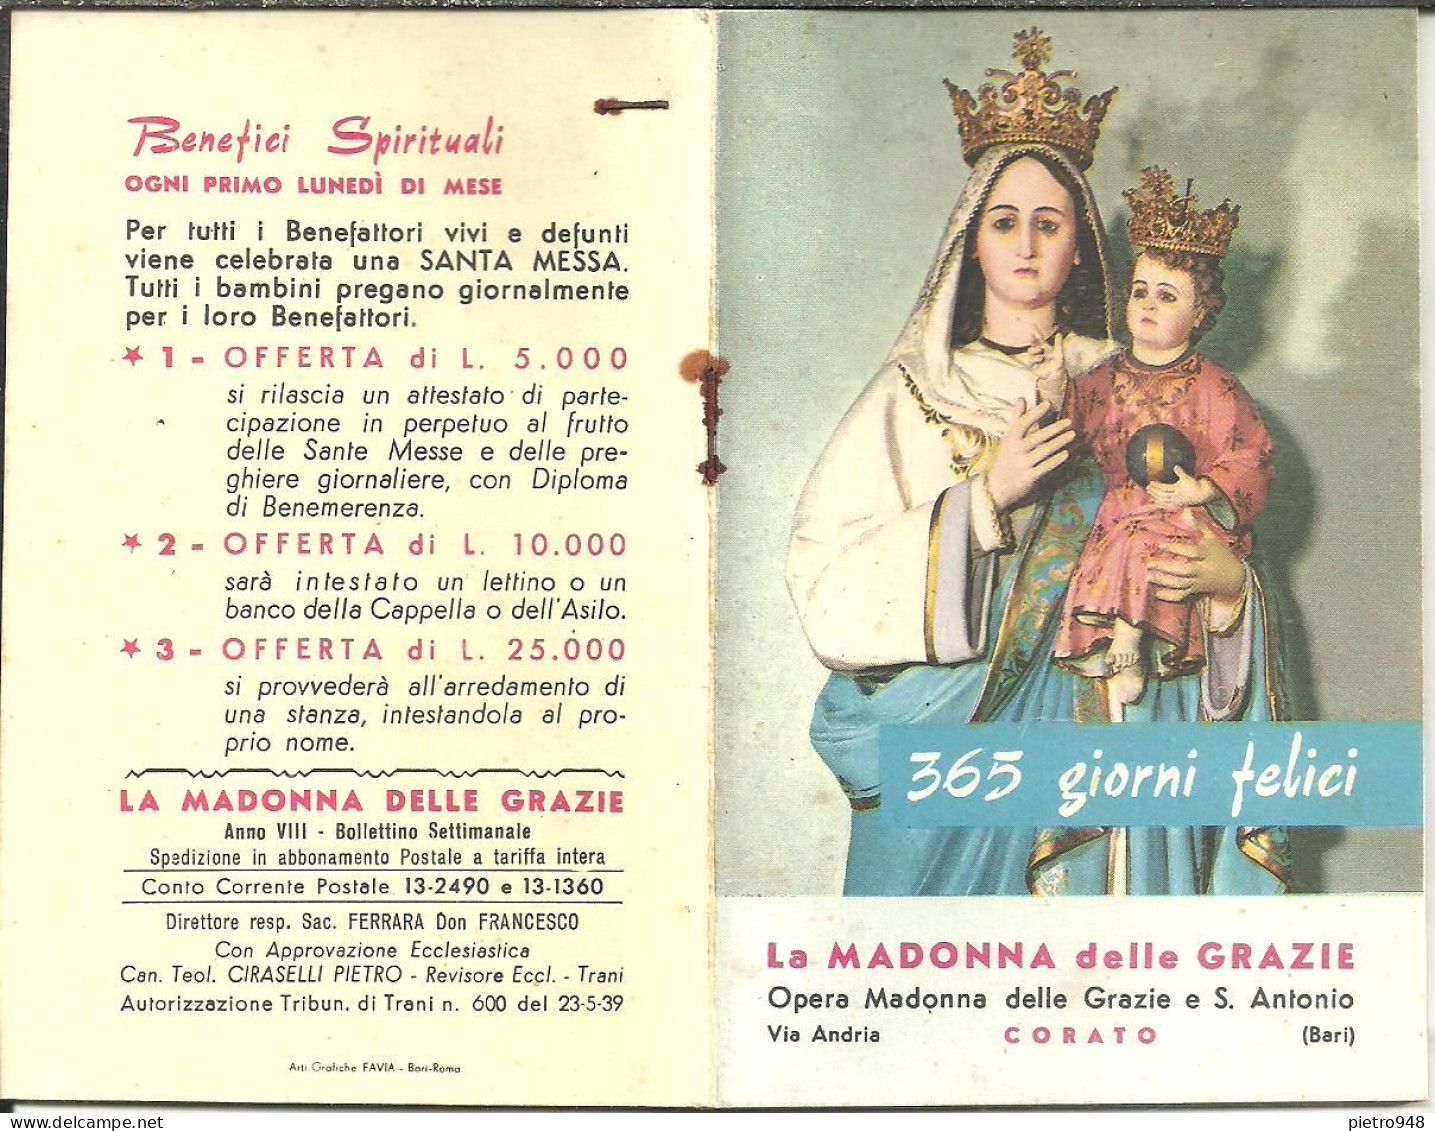 Libro (Libretto) Religioso "Opera Madonna Delle Grazie E Sant'Antonio" Corato (Bari), Agendina 1966 - Religion